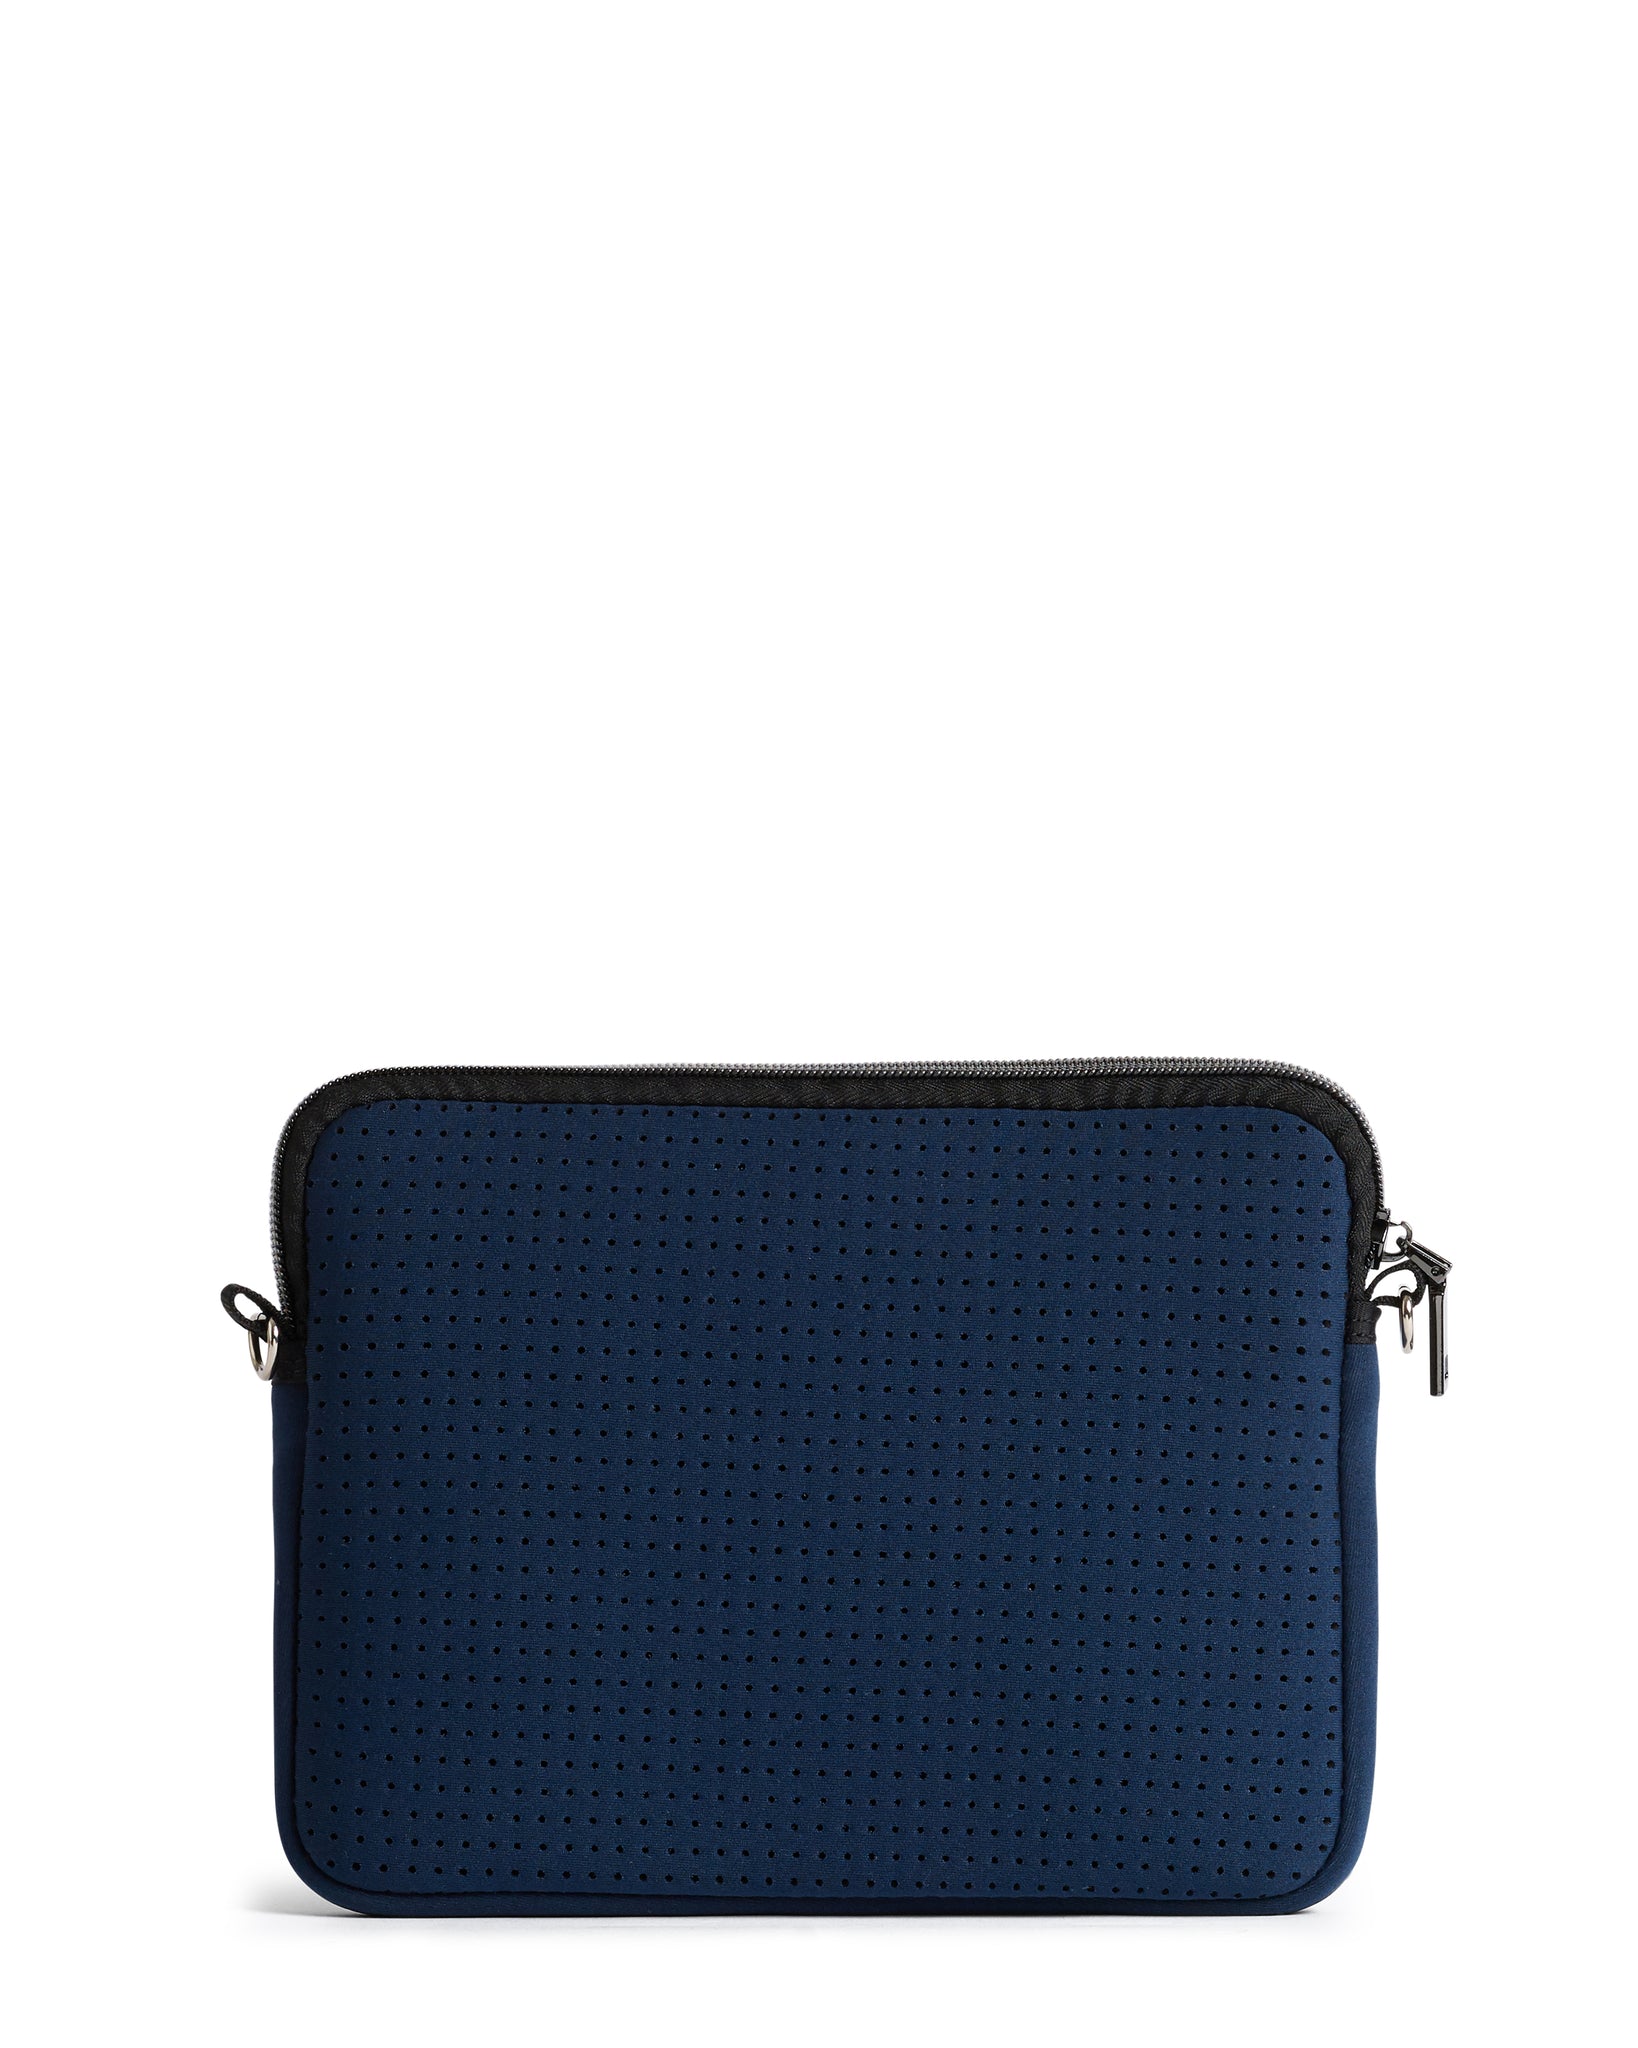 The Pixie Bag (NAVY BLUE) Neoprene Crossbody Bag